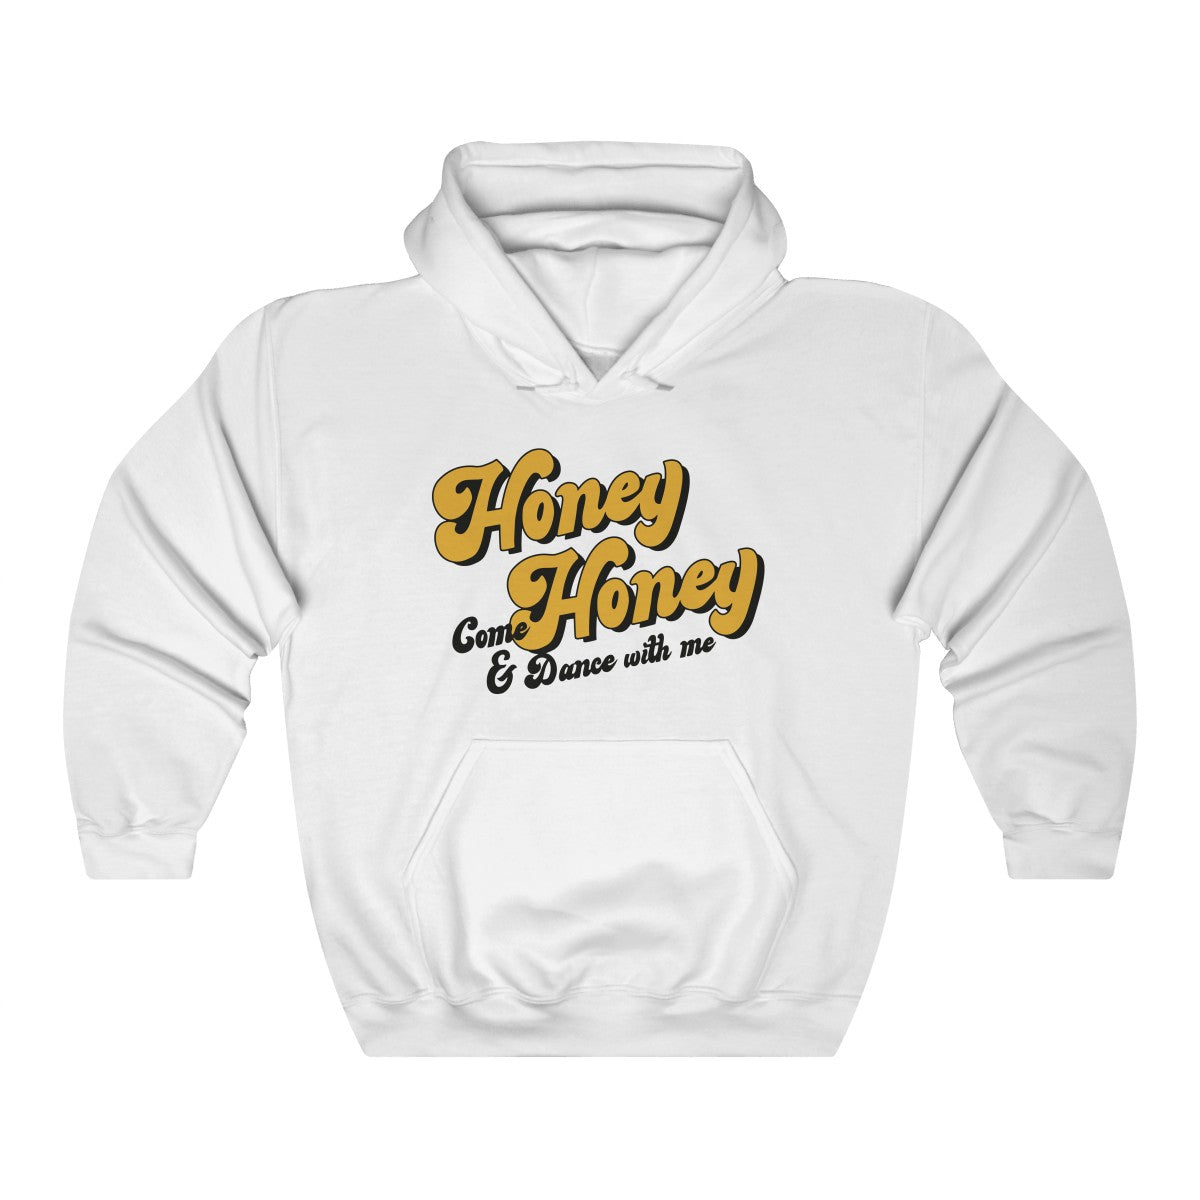 Honey Honey Hoodie